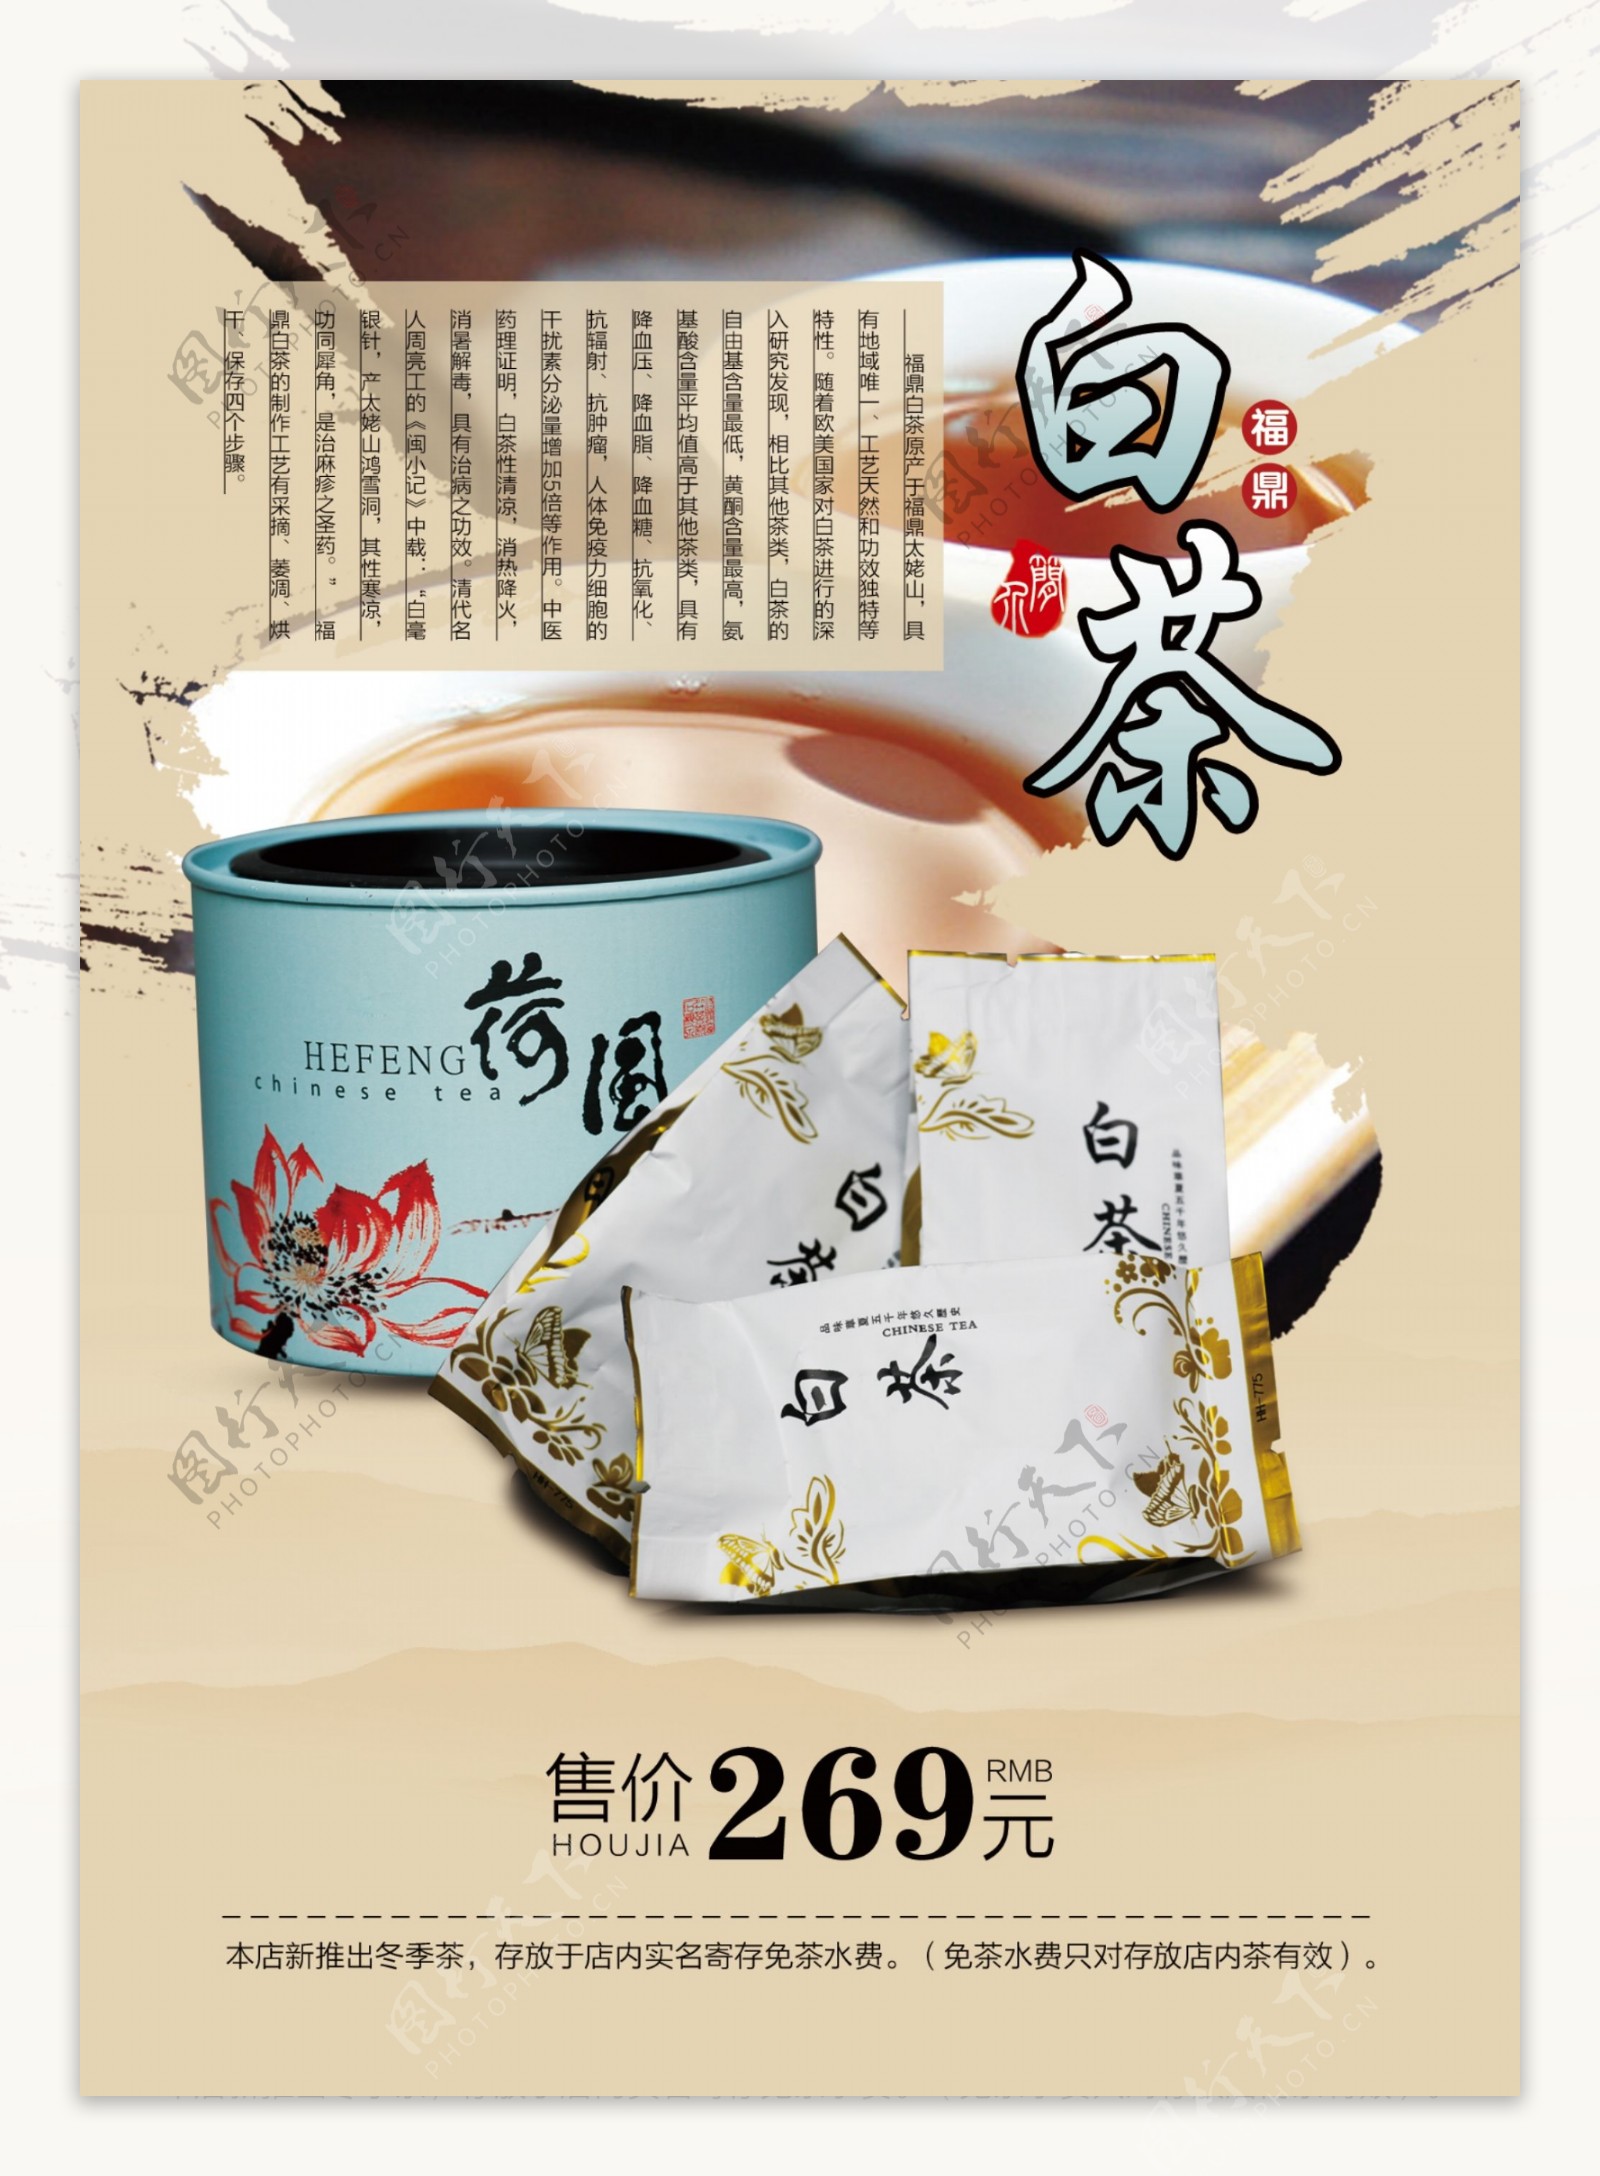 中国风展板茶文化历史大红袍价格